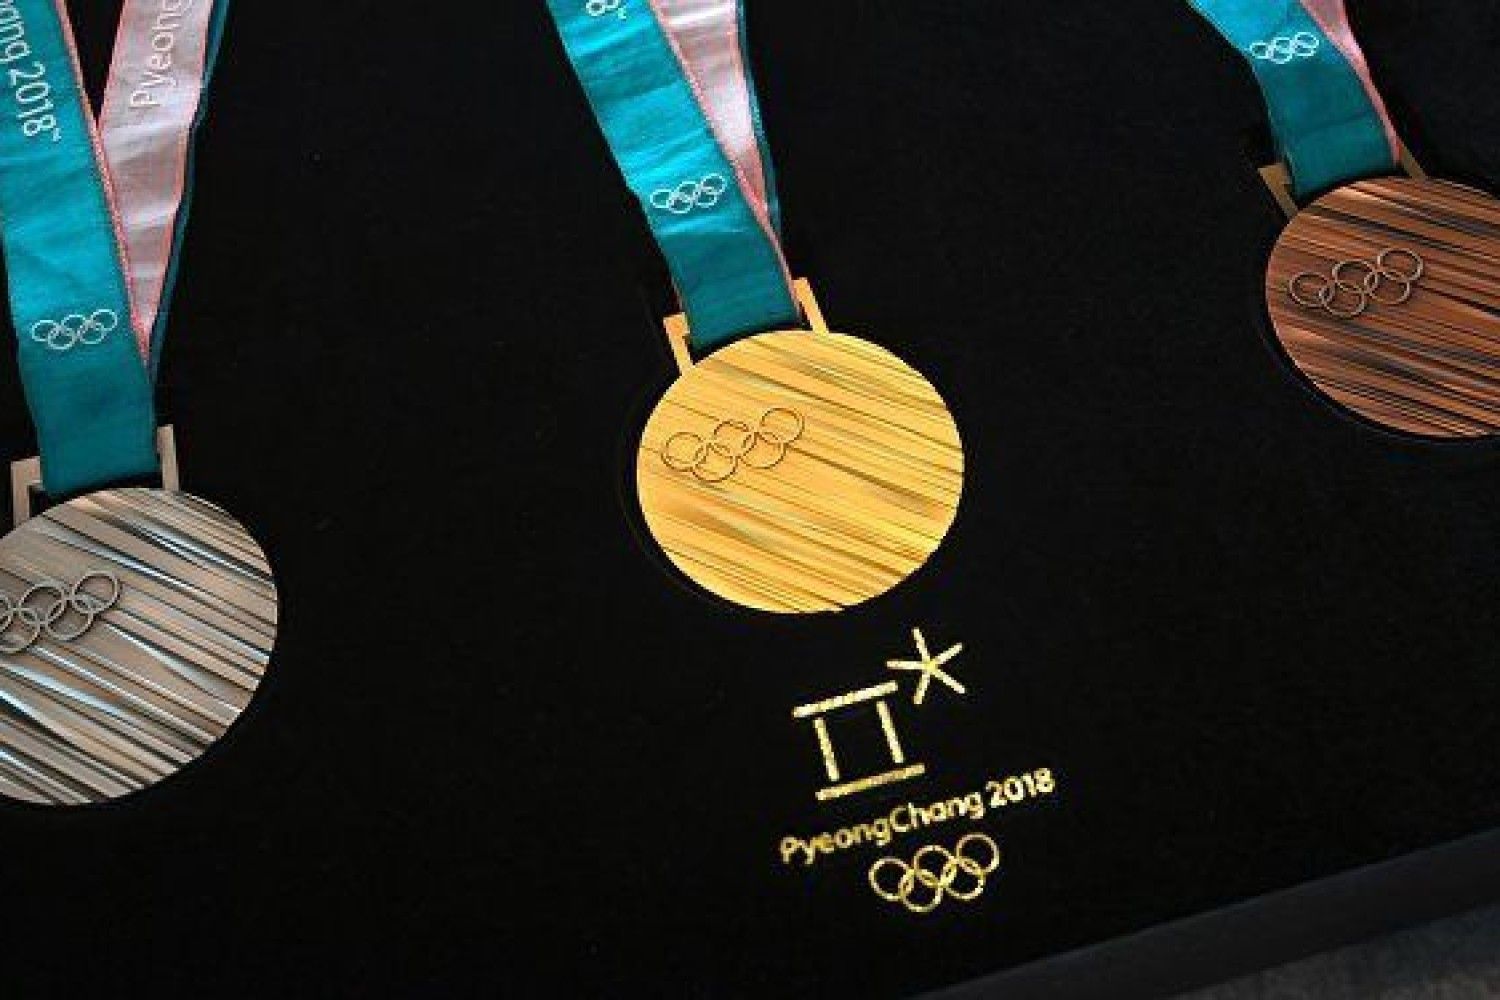 Медали зимних олимпийских играх 2018. Медали Олимпийских игр 2018. Пхенчхан медали. Зимние Олимпийские игры 2018 года медали. Олимпийские медали Ванкувер 2010.